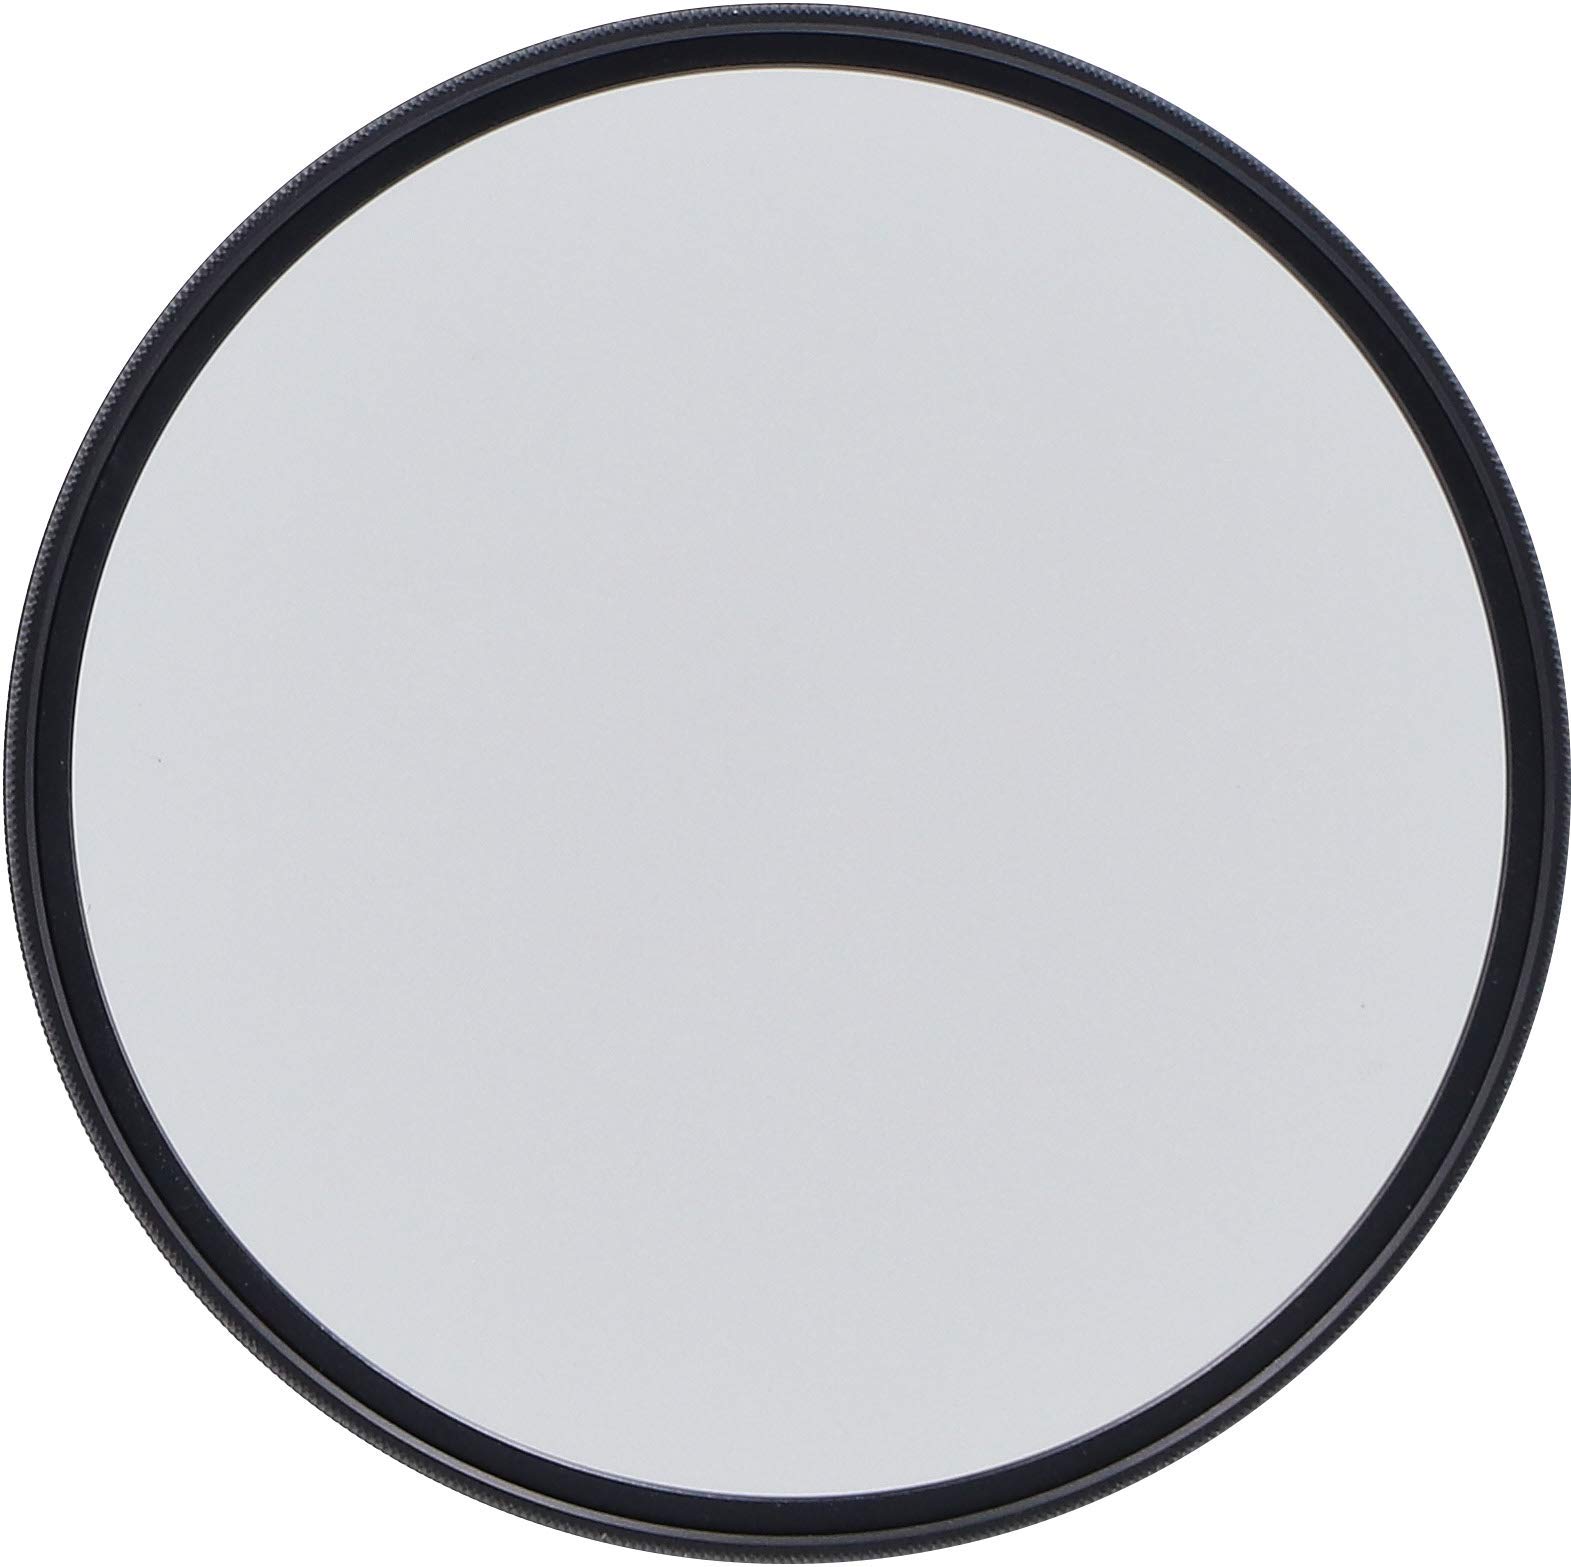 Rollei F:X Pro Rundfilter (52 mm, CPL-Filter) Schraubfilter aus Gorilla®* Glas mit hoher Farbtreue und Reflexionsfreiheit